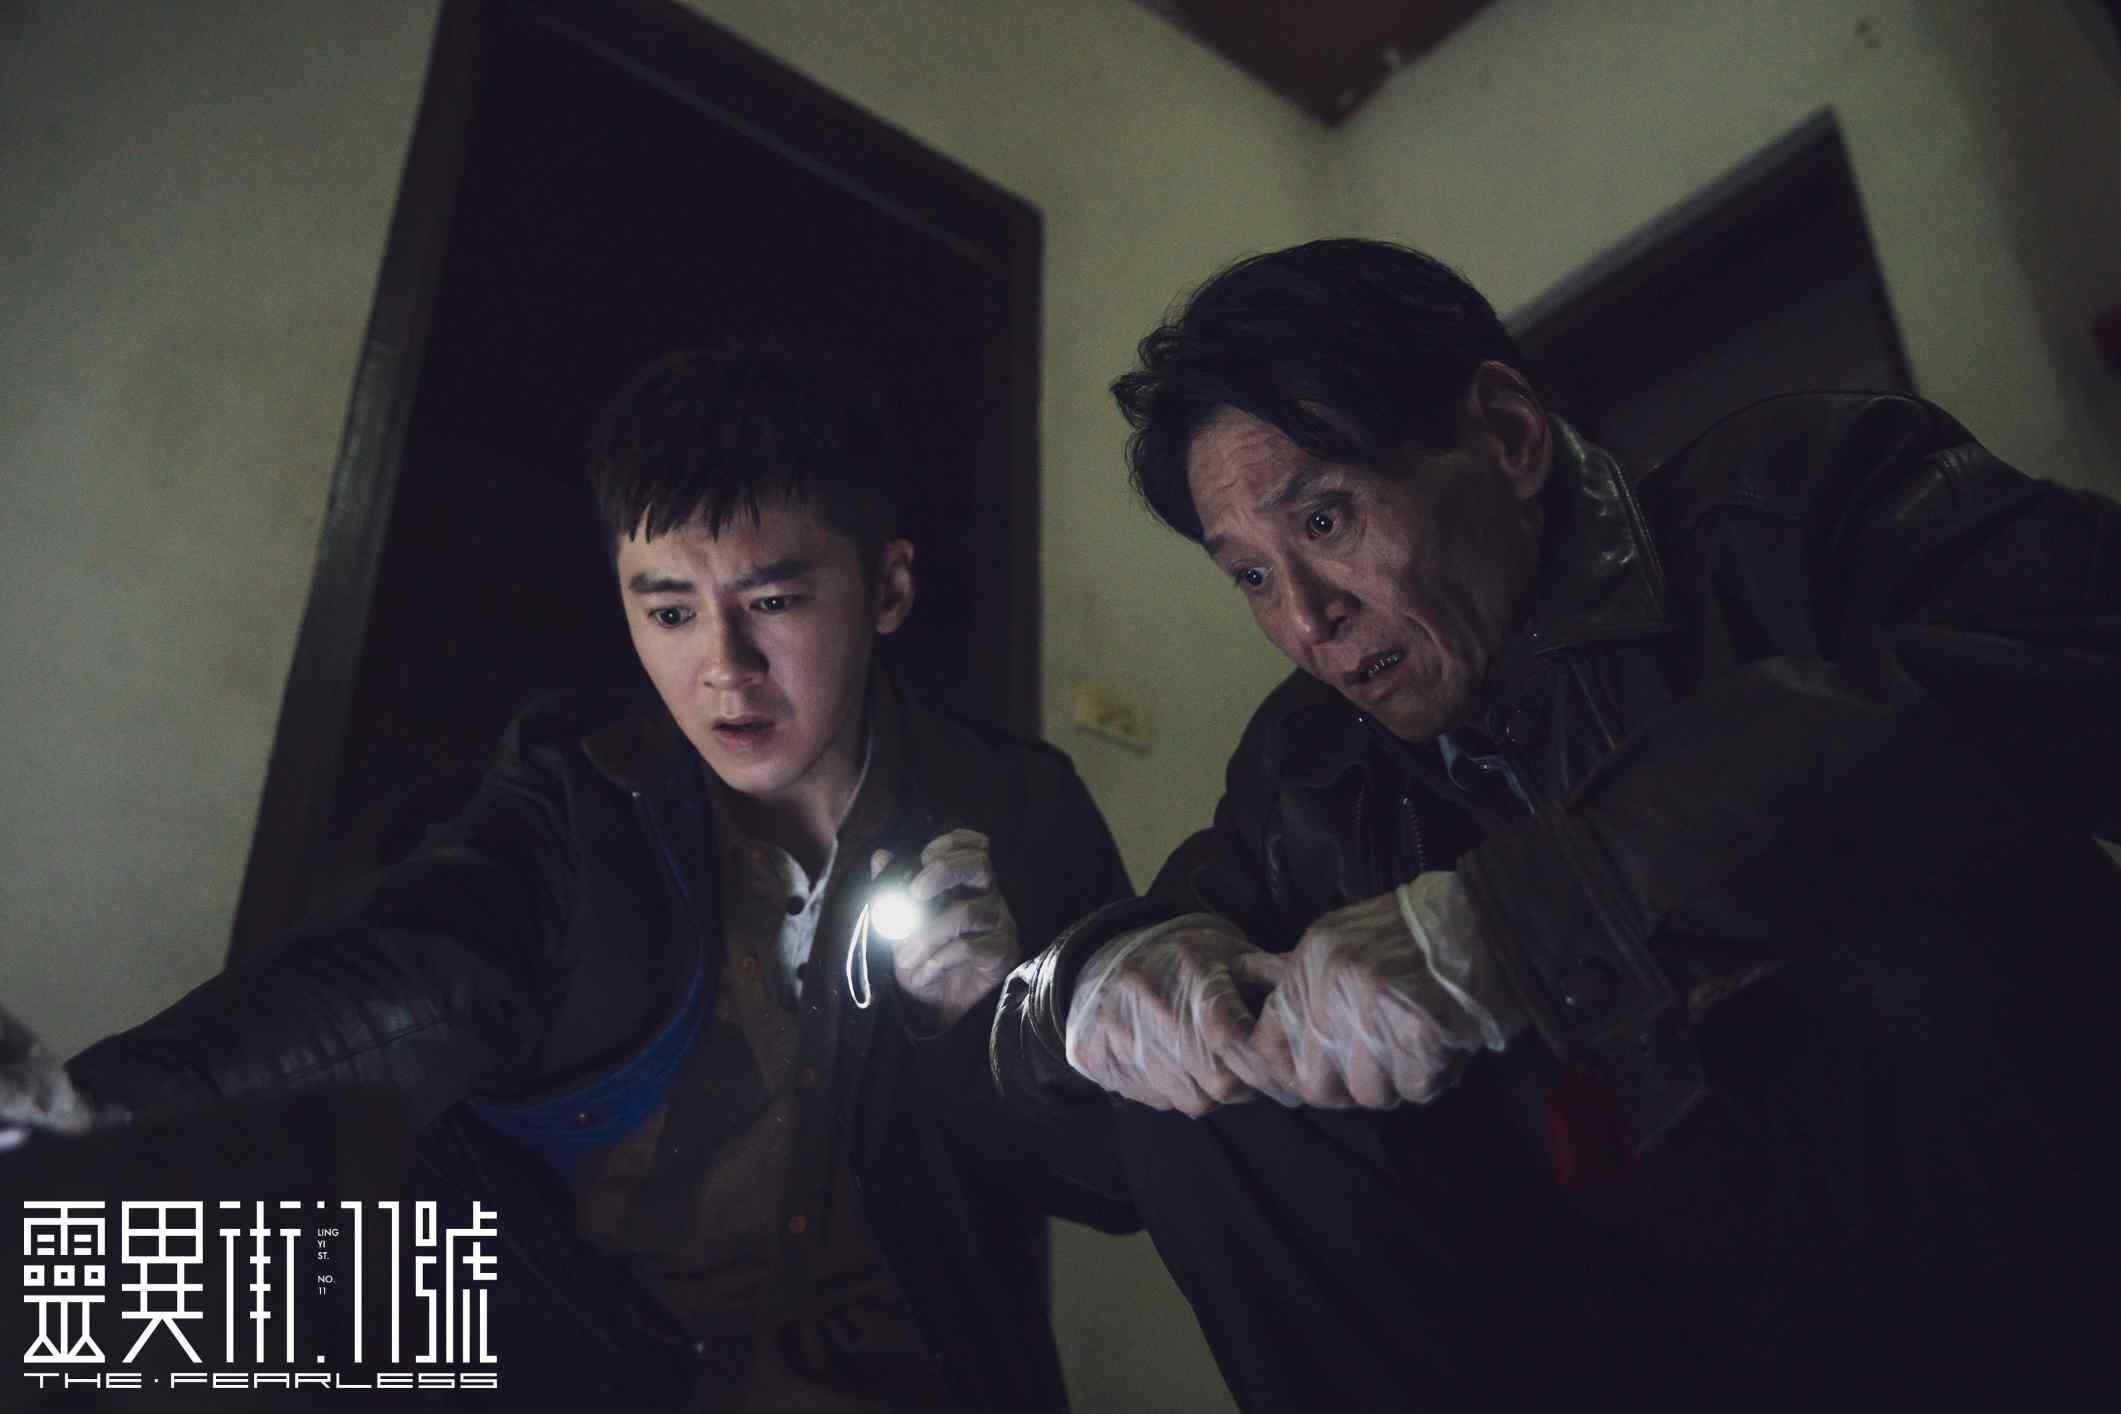 偶像派跨足演技派，李國毅在《靈異街11號》脫胎換骨 | 專訪 | 焦點影人